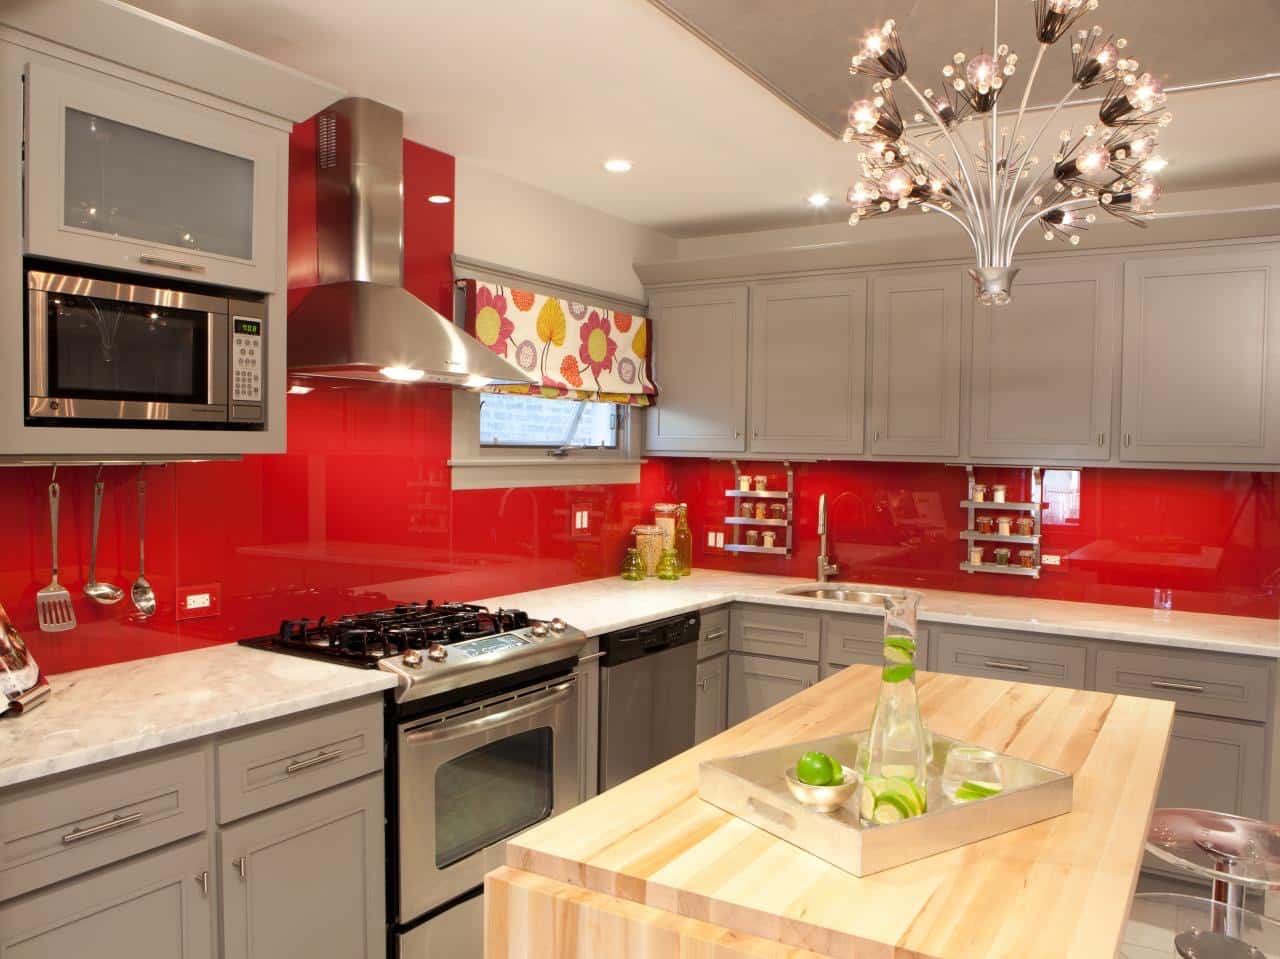 Dapur Dinding Merah dengan Perpaduan Perak dan Warna Putih - Thegorbalsla